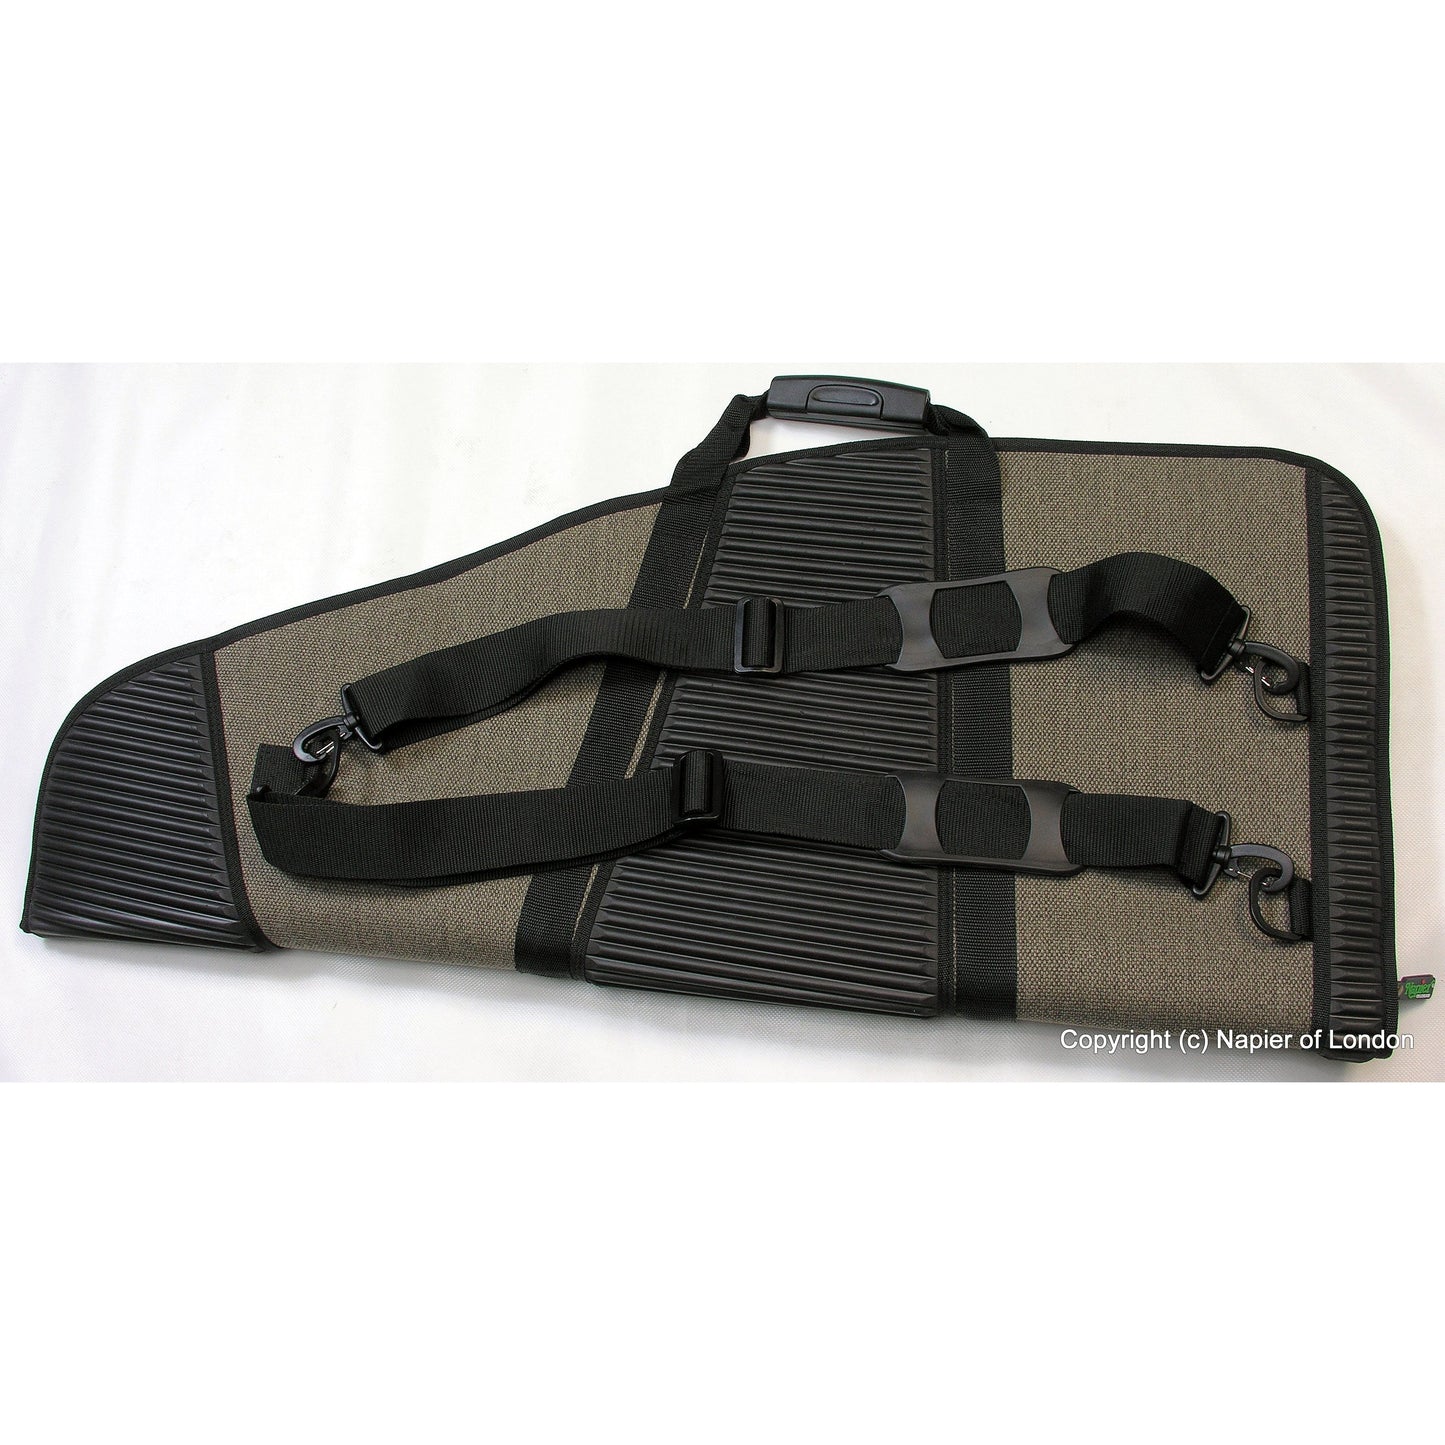 BullPup DX Air Rifle Bag